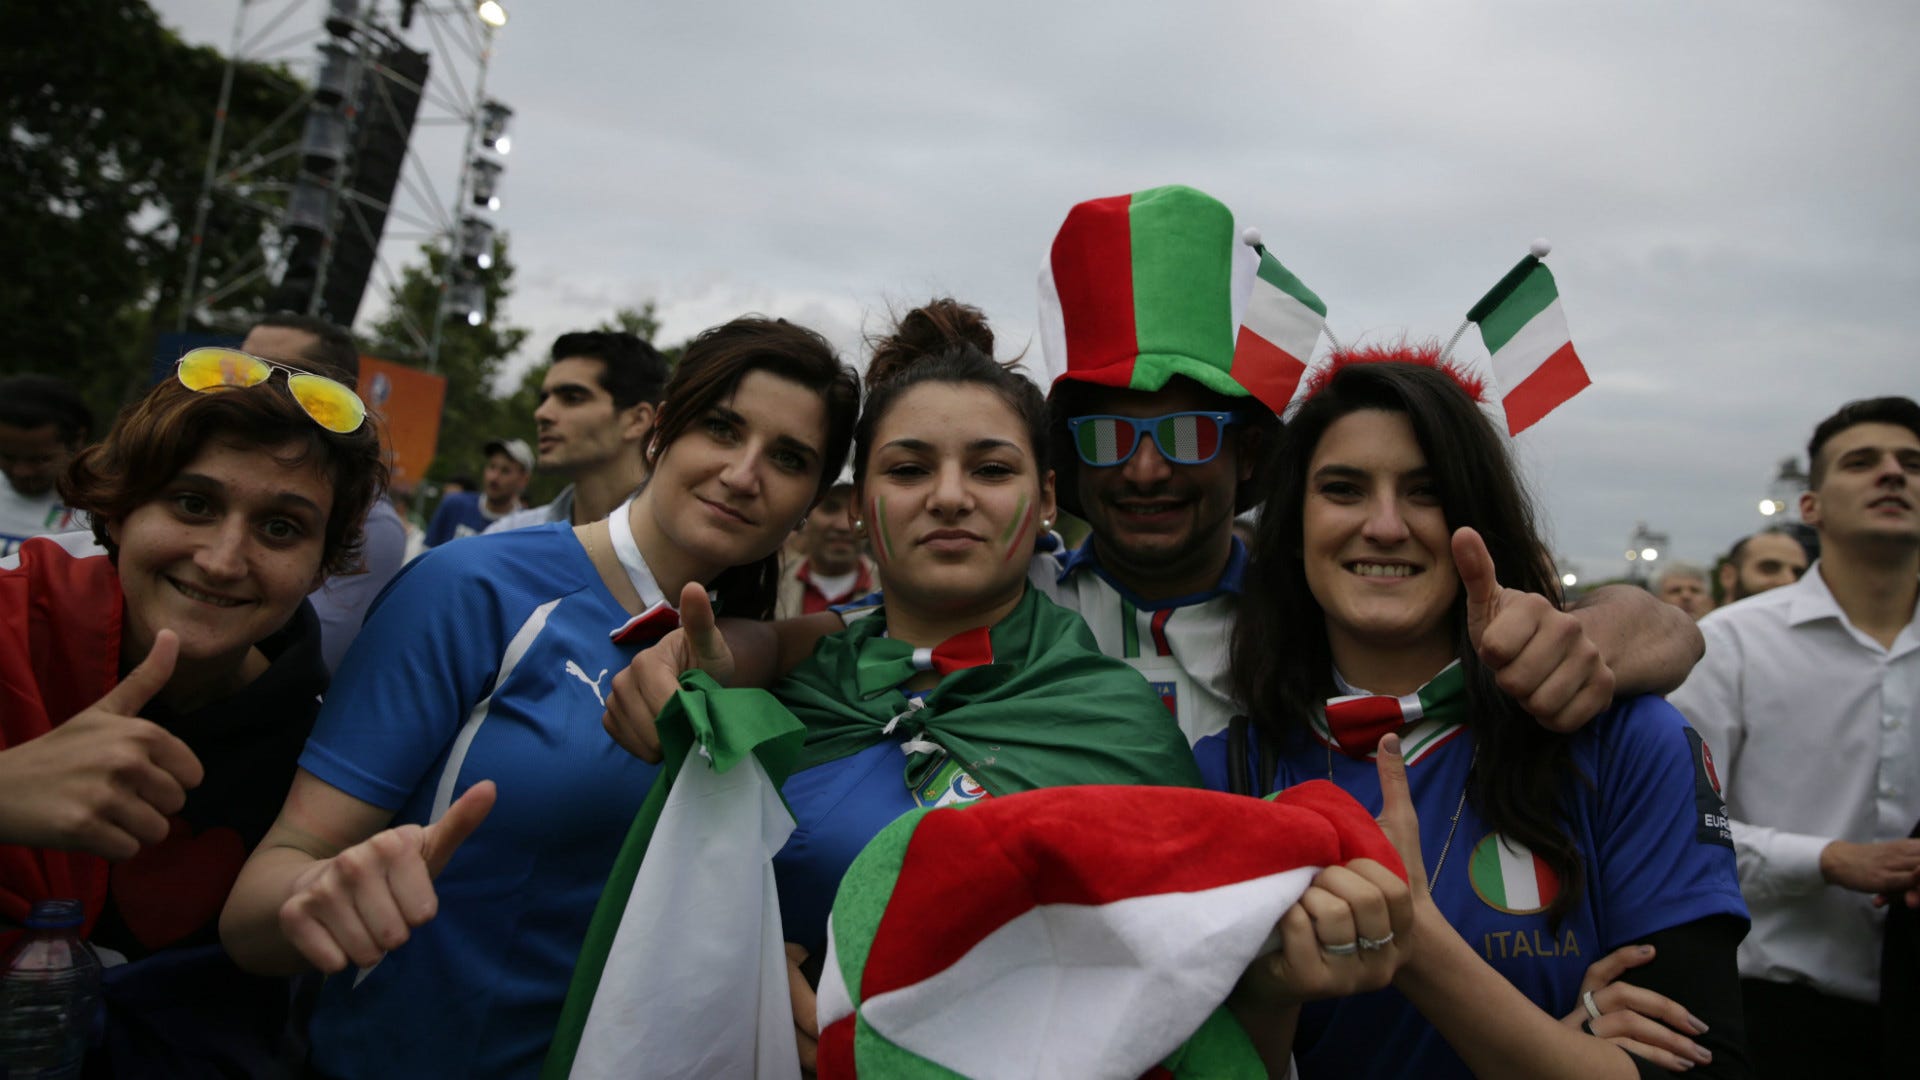 Italy fans Euro 2016